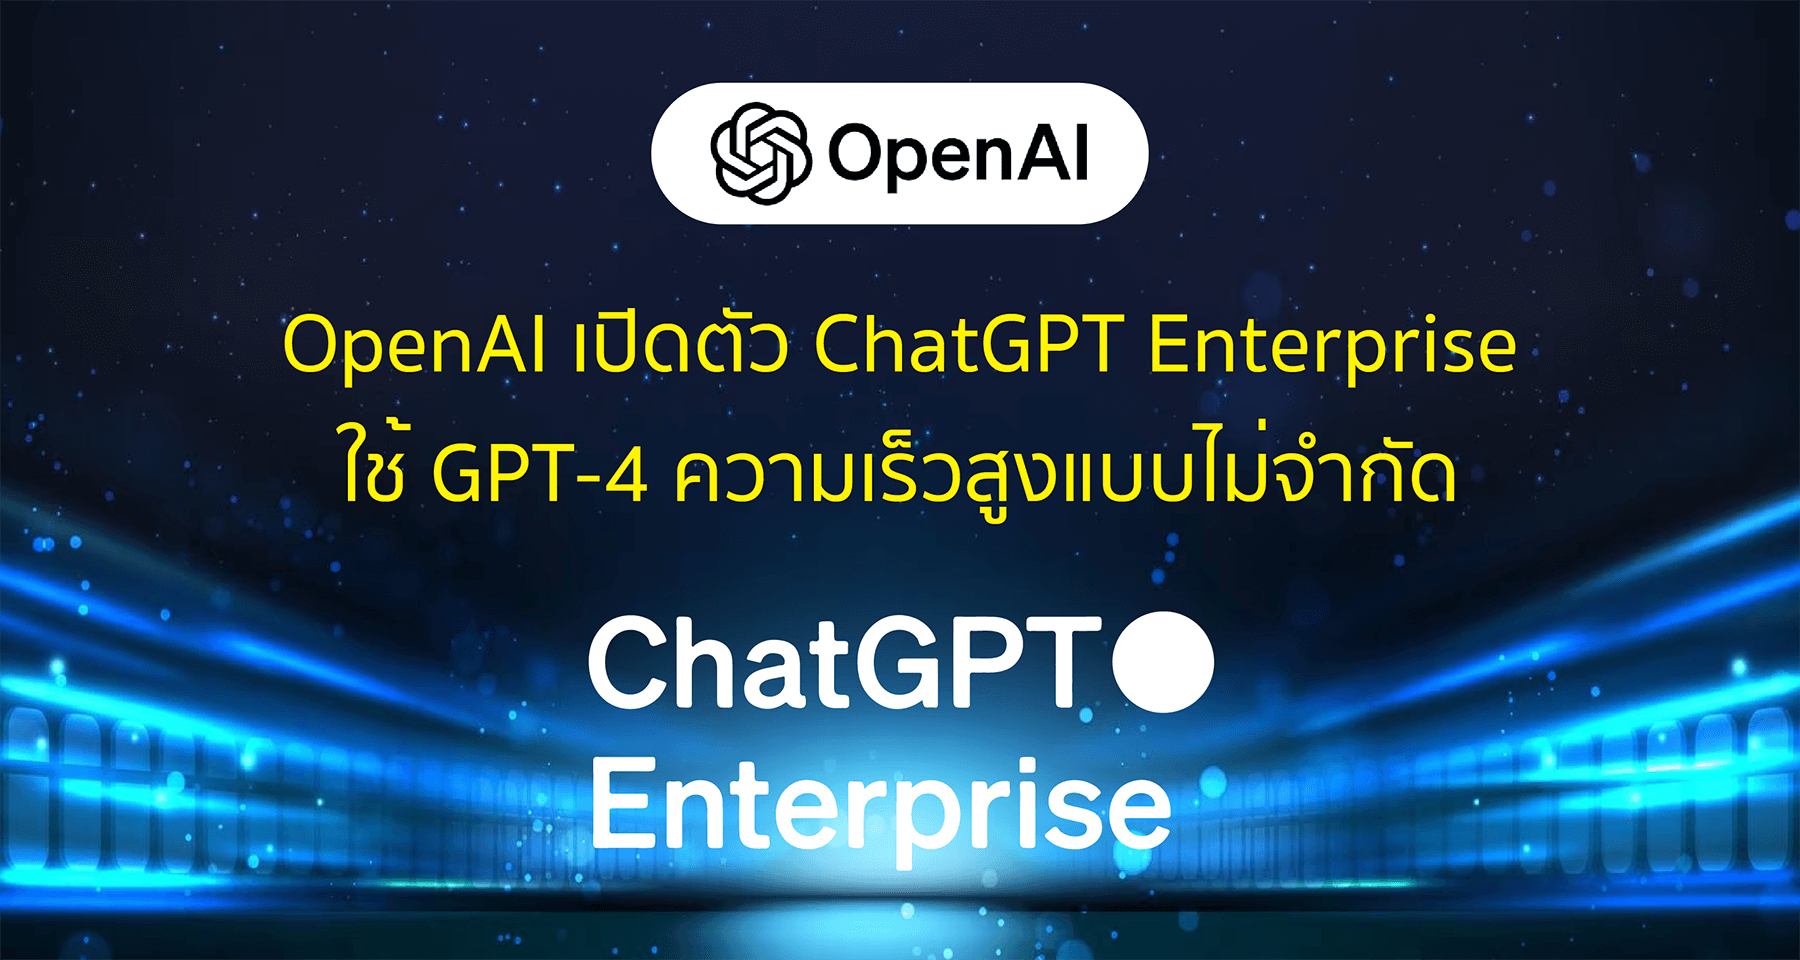 OpenAI เปิดตัว ChatGPT Enterprise ใช้ GPT-4 ความเร็วสูงแบบไม่จำกัด